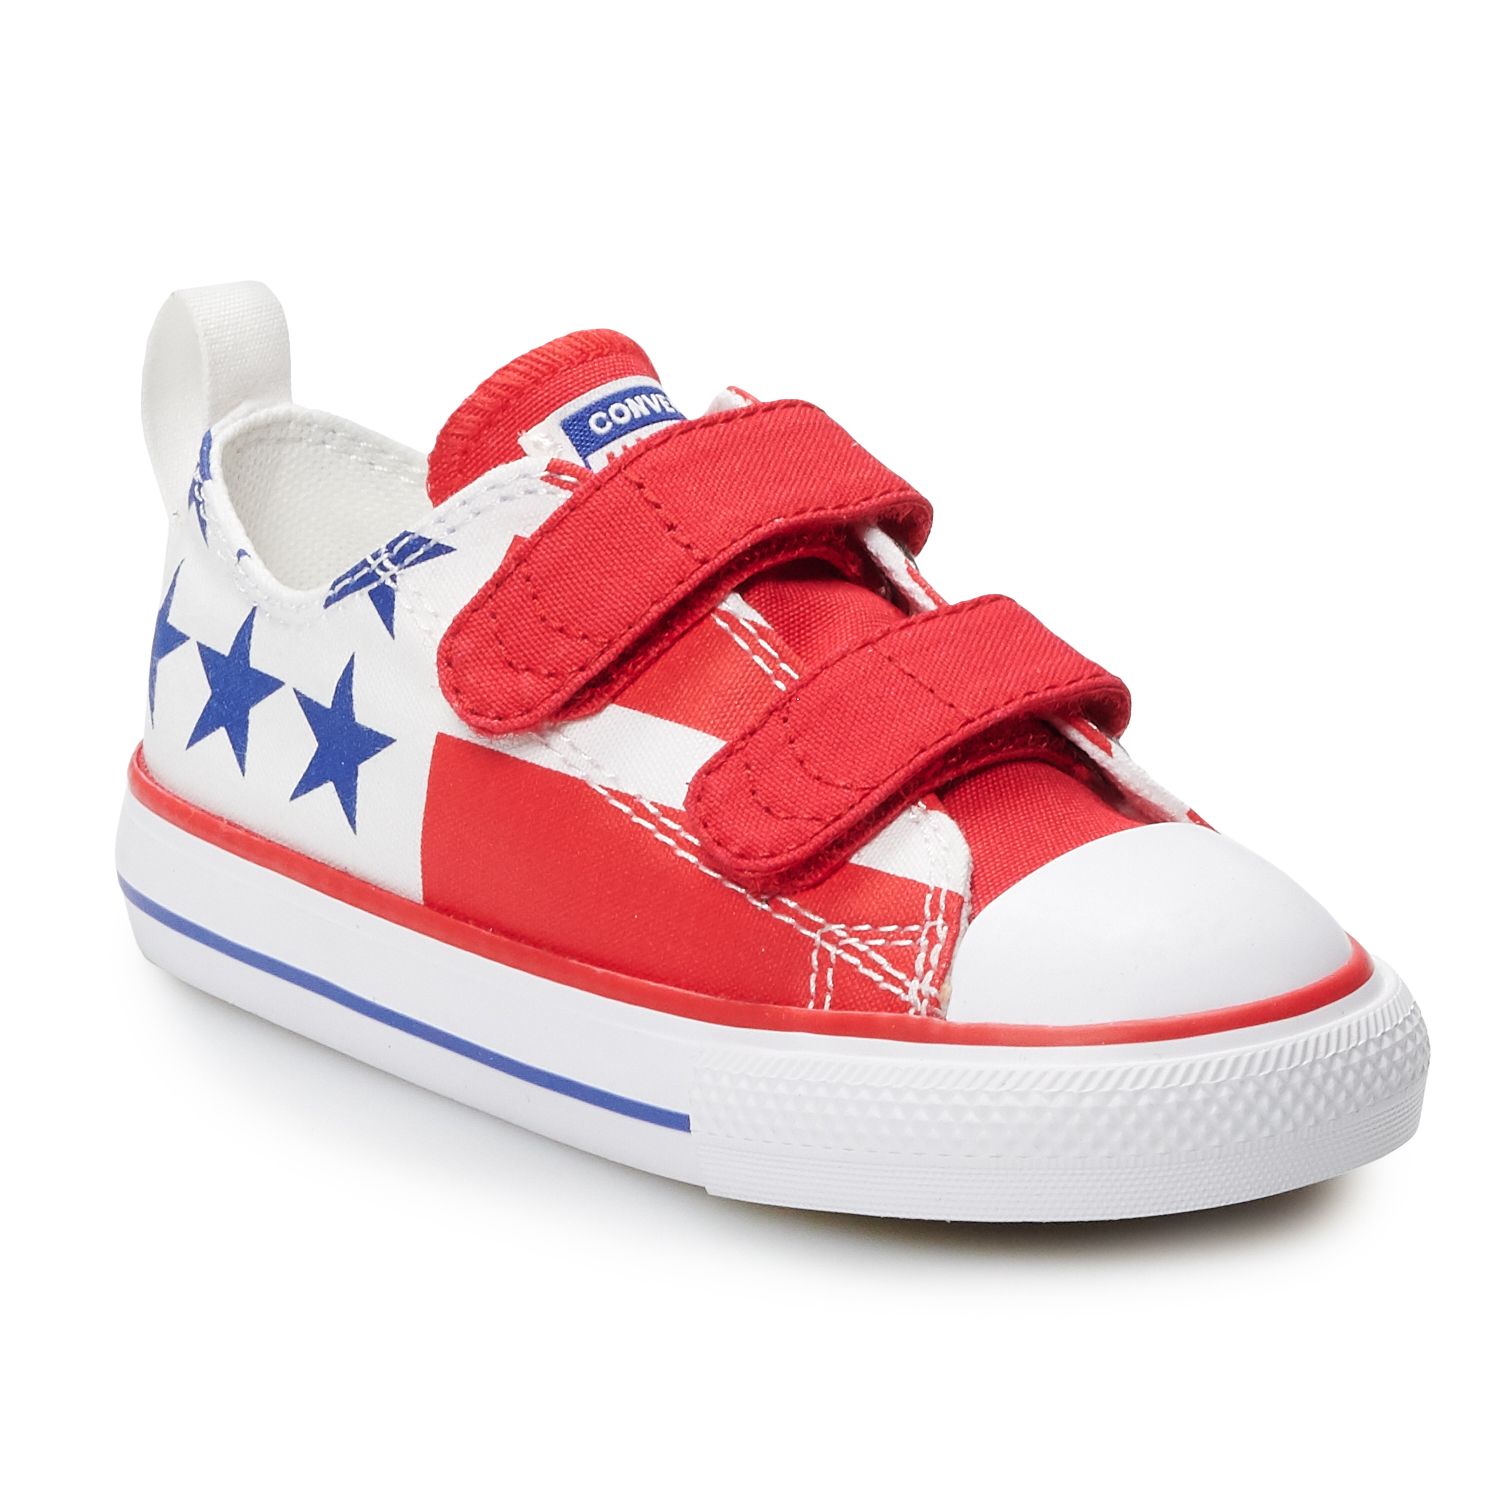 kohls toddler boy sneakers